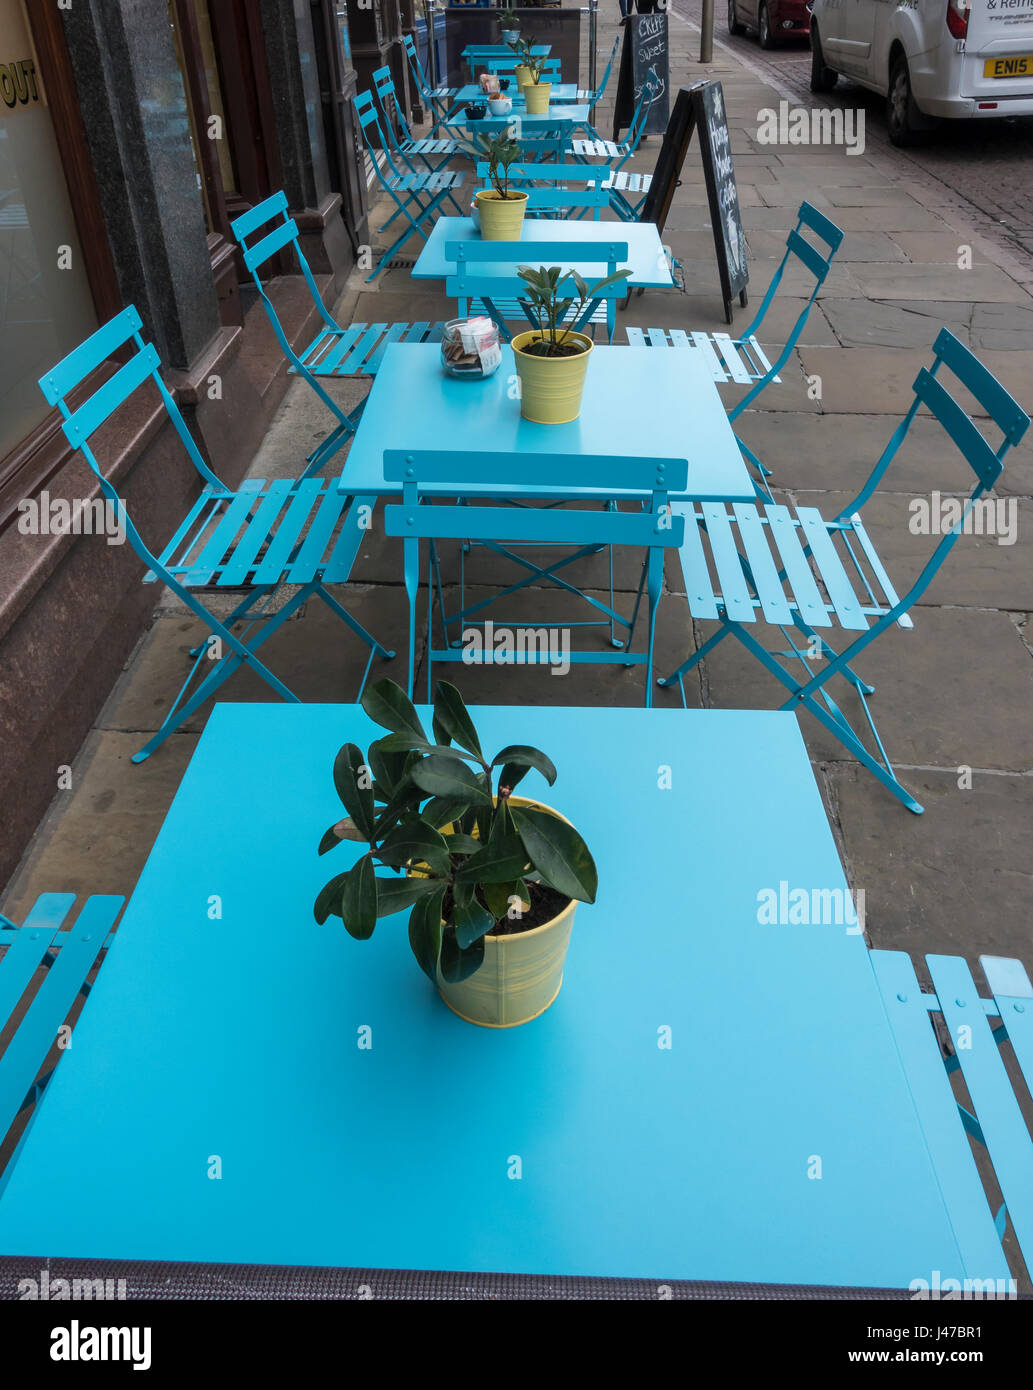 Tables et chaises bleu prêt pour vos clients Banque D'Images